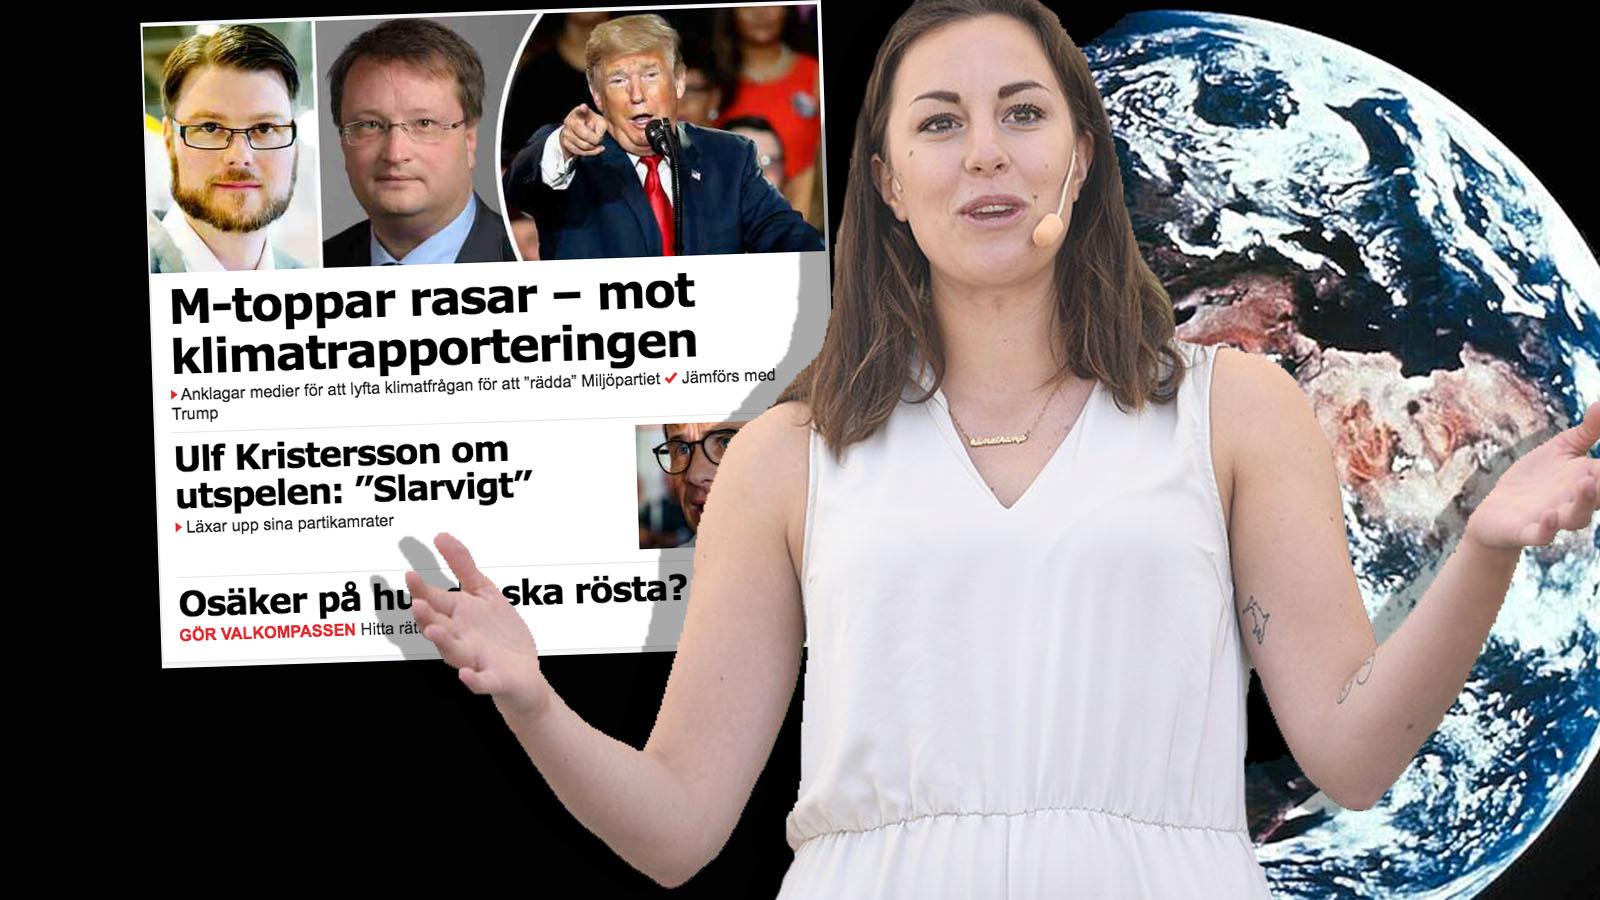 Moderaterna är konspirationsteoretiker med skev syn på fria medier, skriver Hanna Lidström.